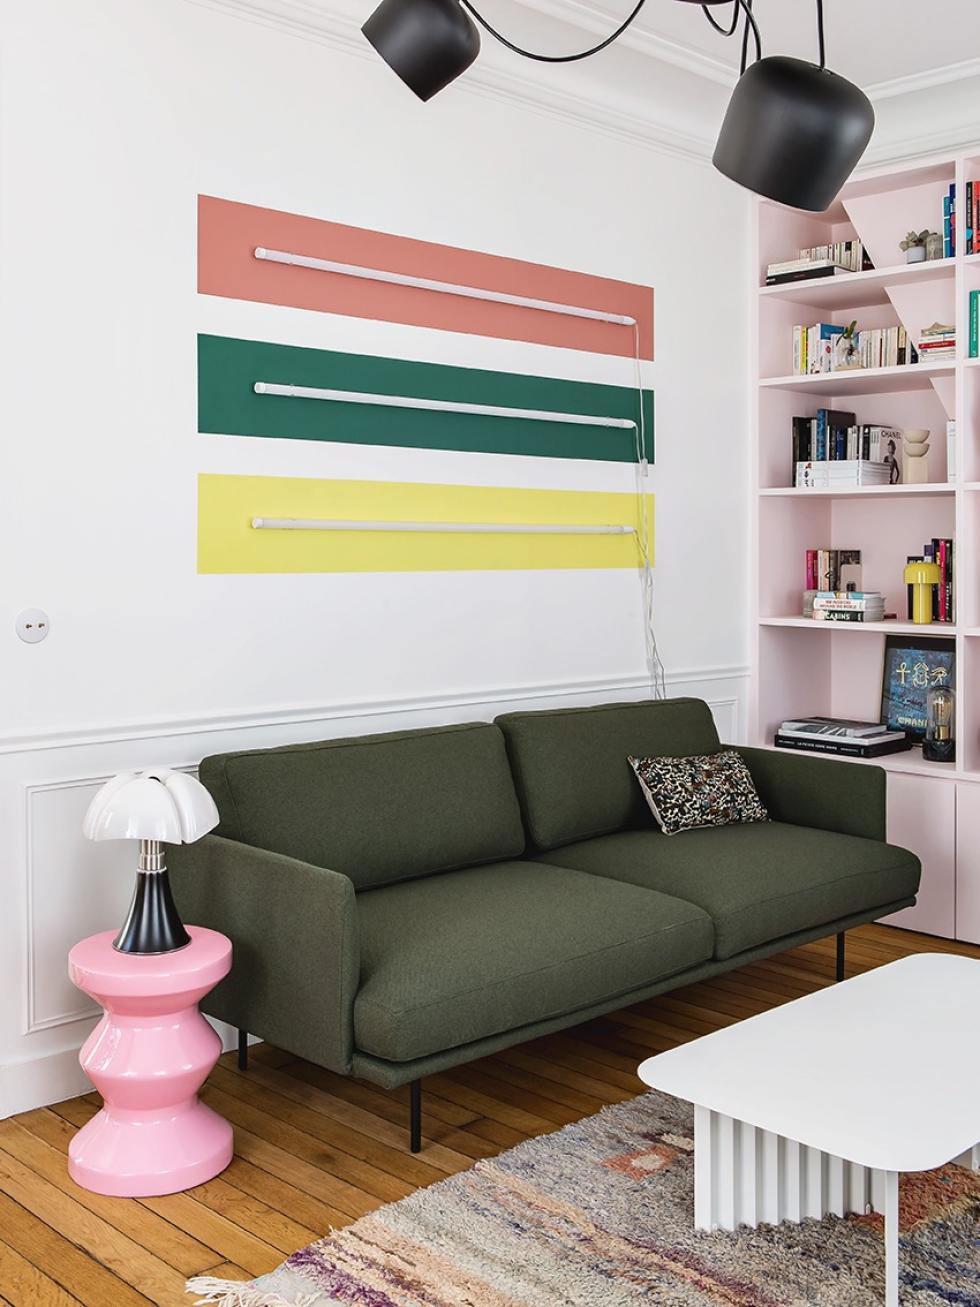 Projekt mit farbigen Wänden realisiert von Lucie Socrate ⓒ Hervé Goluza für Plum Living